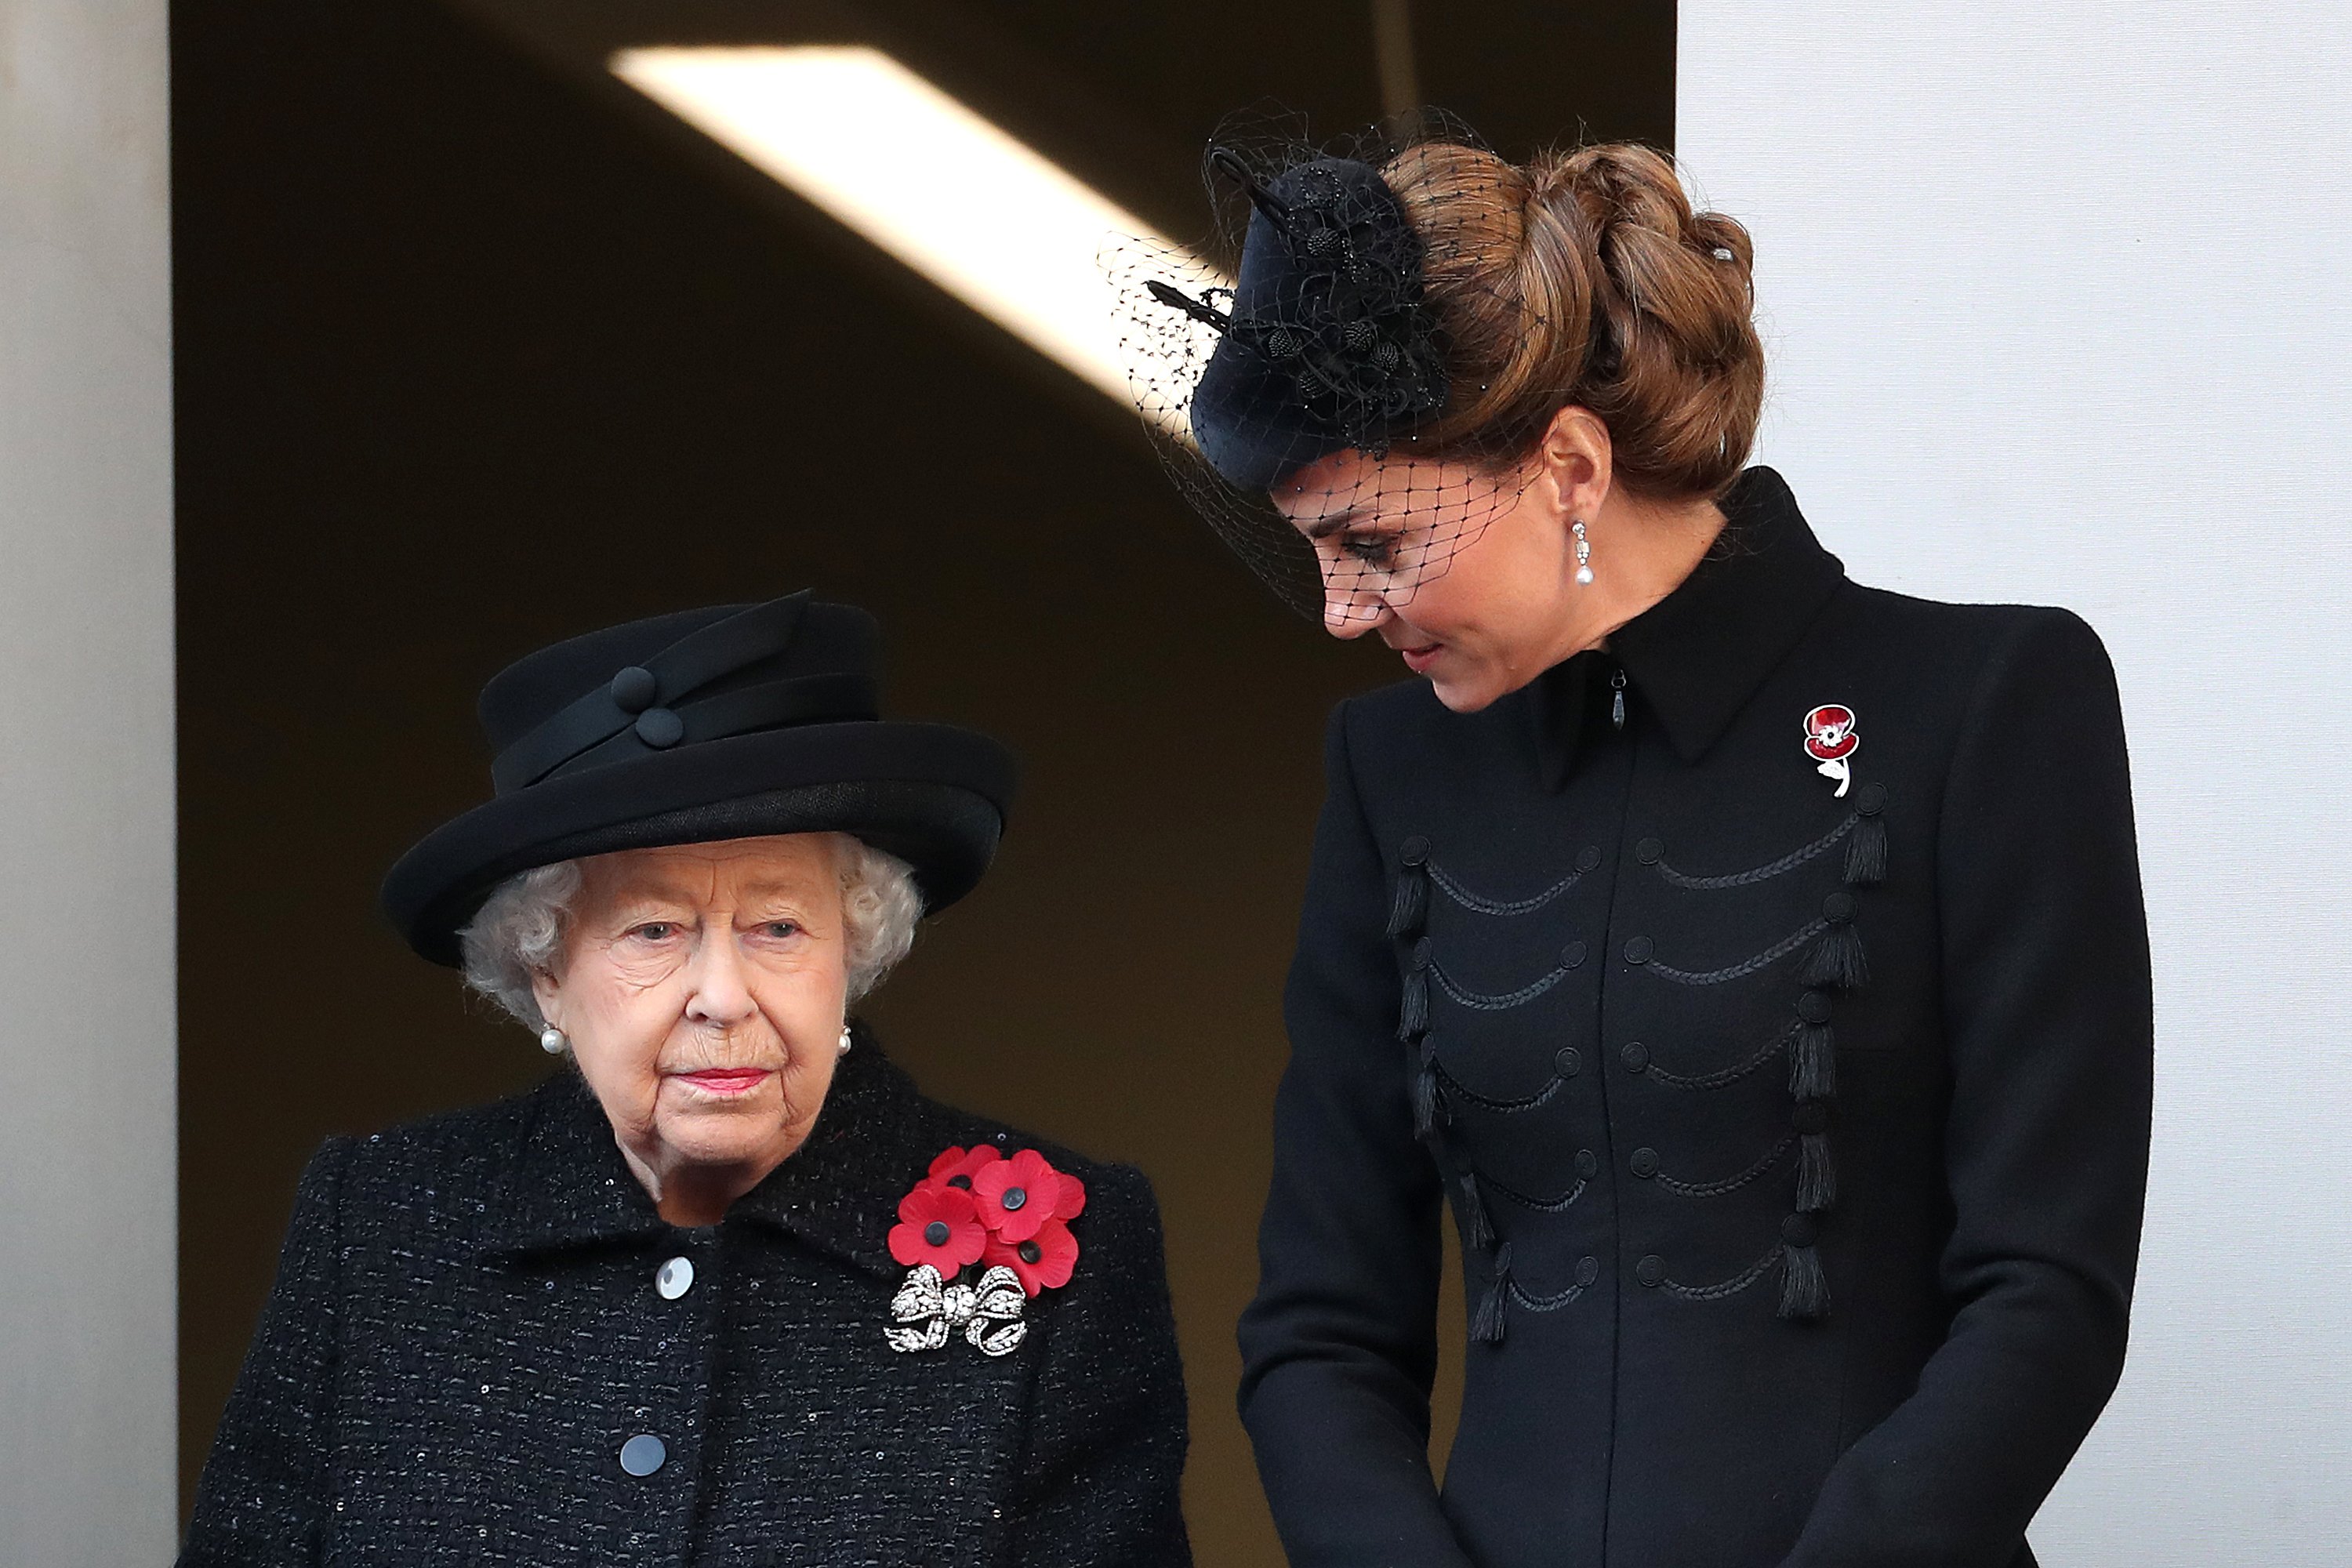 Königin Elizabeth II. und Catherine, Herzogin von Cambridge, beim jährlichen Remembrance Sunday Memorial im Cenotaph am 10. November 2019 in London, England. | Quelle: Getty Images